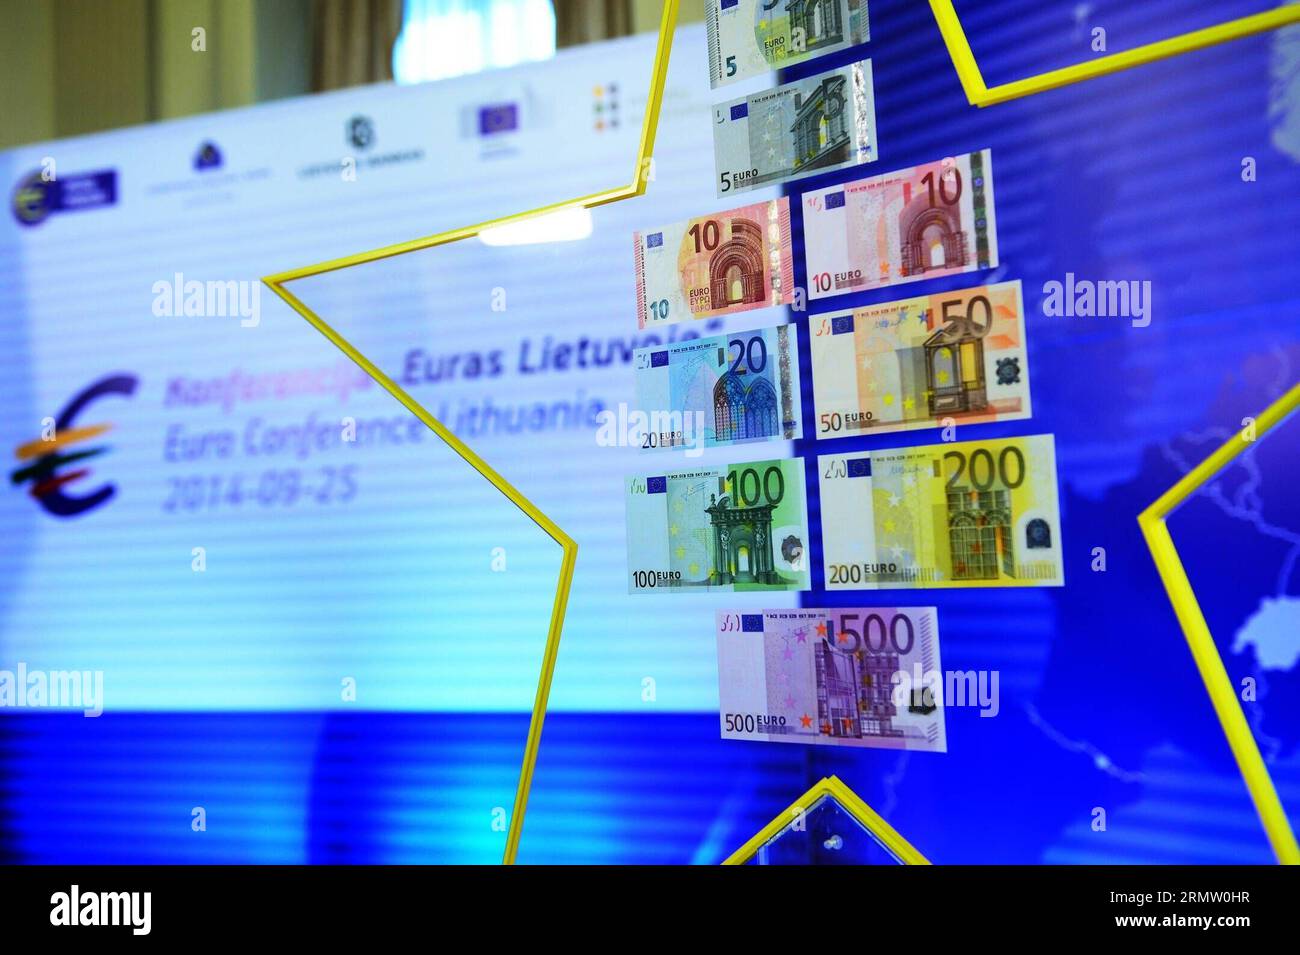 (140925) -- VILNIUS, 25. September 2014 -- Foto aufgenommen am 25. September 2014, zeigt den Euro Star in Vilnius, Litauen. Der Präsident der Europäischen Zentralbank (EZB) Mario Draghi übergab hier am Donnerstag einen Euro Star an den Vorsitzenden der litauischen Zentralbank, ein Zeichen, das die Mitgliedschaft Litauens im Euro-Währungsgebiet symbolisiert. ) (lmz) LUTHUANIA-VILNIUS-EURO STAR AlfredasxPliadis PUBLICATIONxNOTxINxCHN Vilnius Sept 25 2014 Foto aufgenommen AM 25 2014. September zeigt den Euro Star in Vilnius Litauen Präsident der Europäischen Zentralbank EZB Mario Draghi übergab einen Euro Star an den Vorsitzenden der litauischen Zentralbank Stockfoto